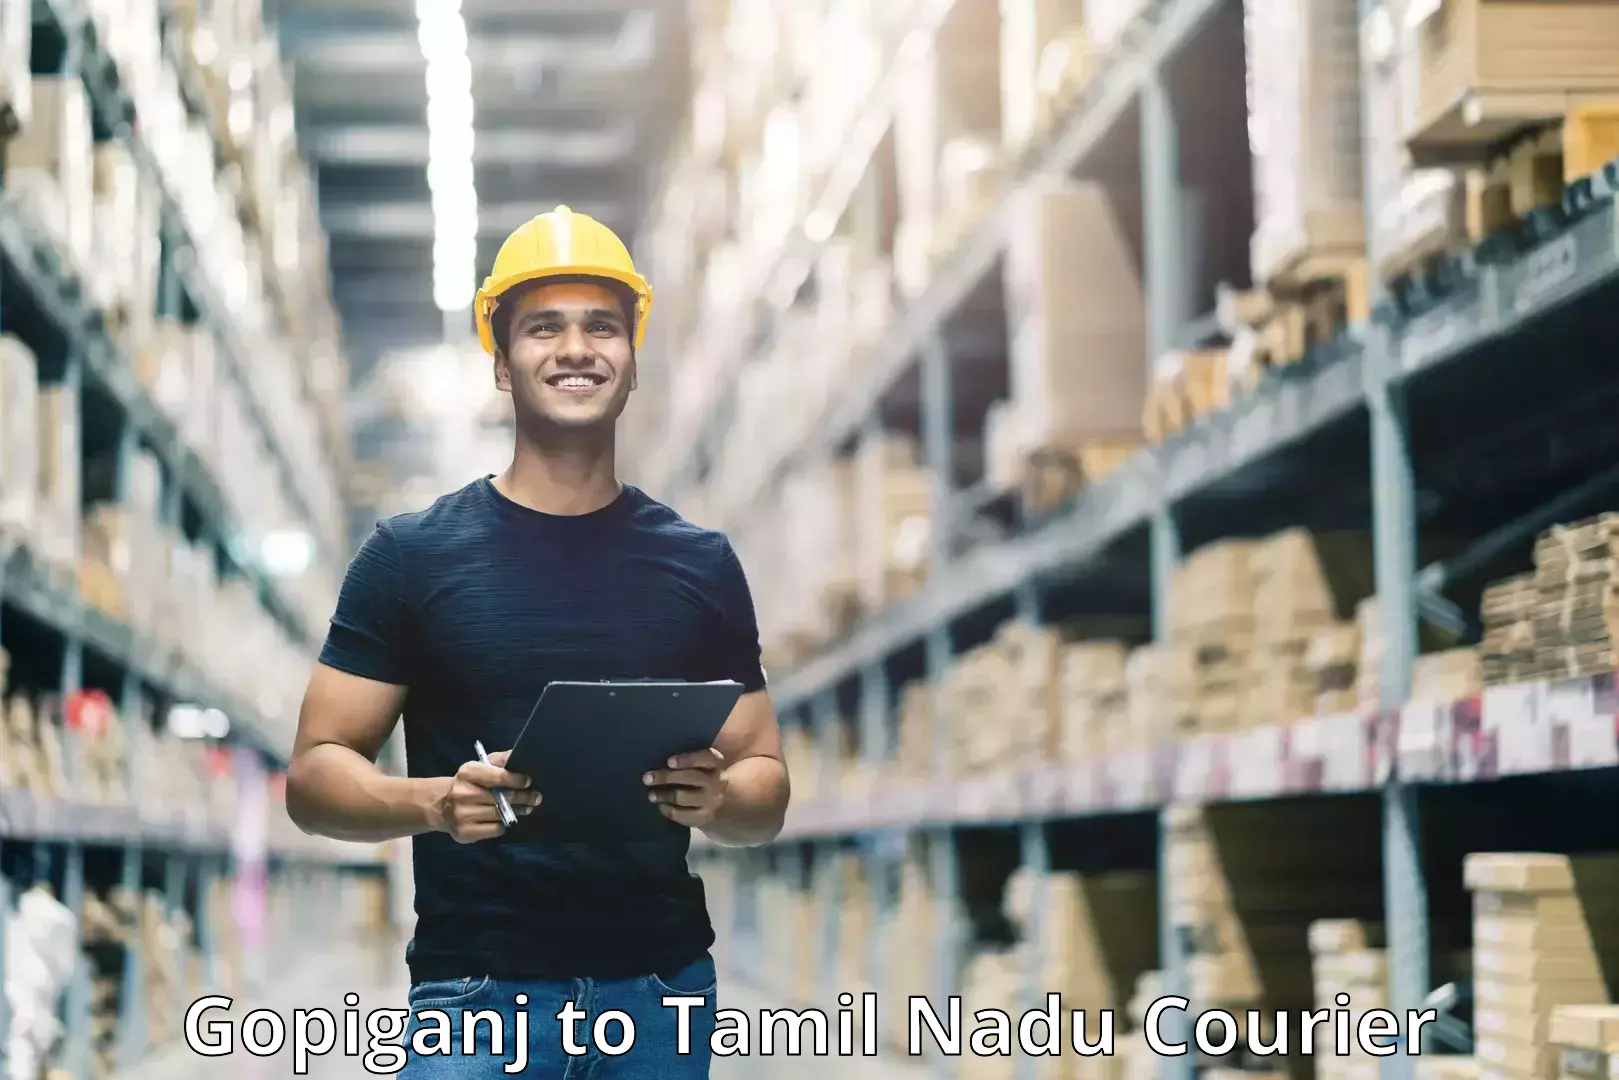 Parcel service for businesses Gopiganj to Tamil Nadu